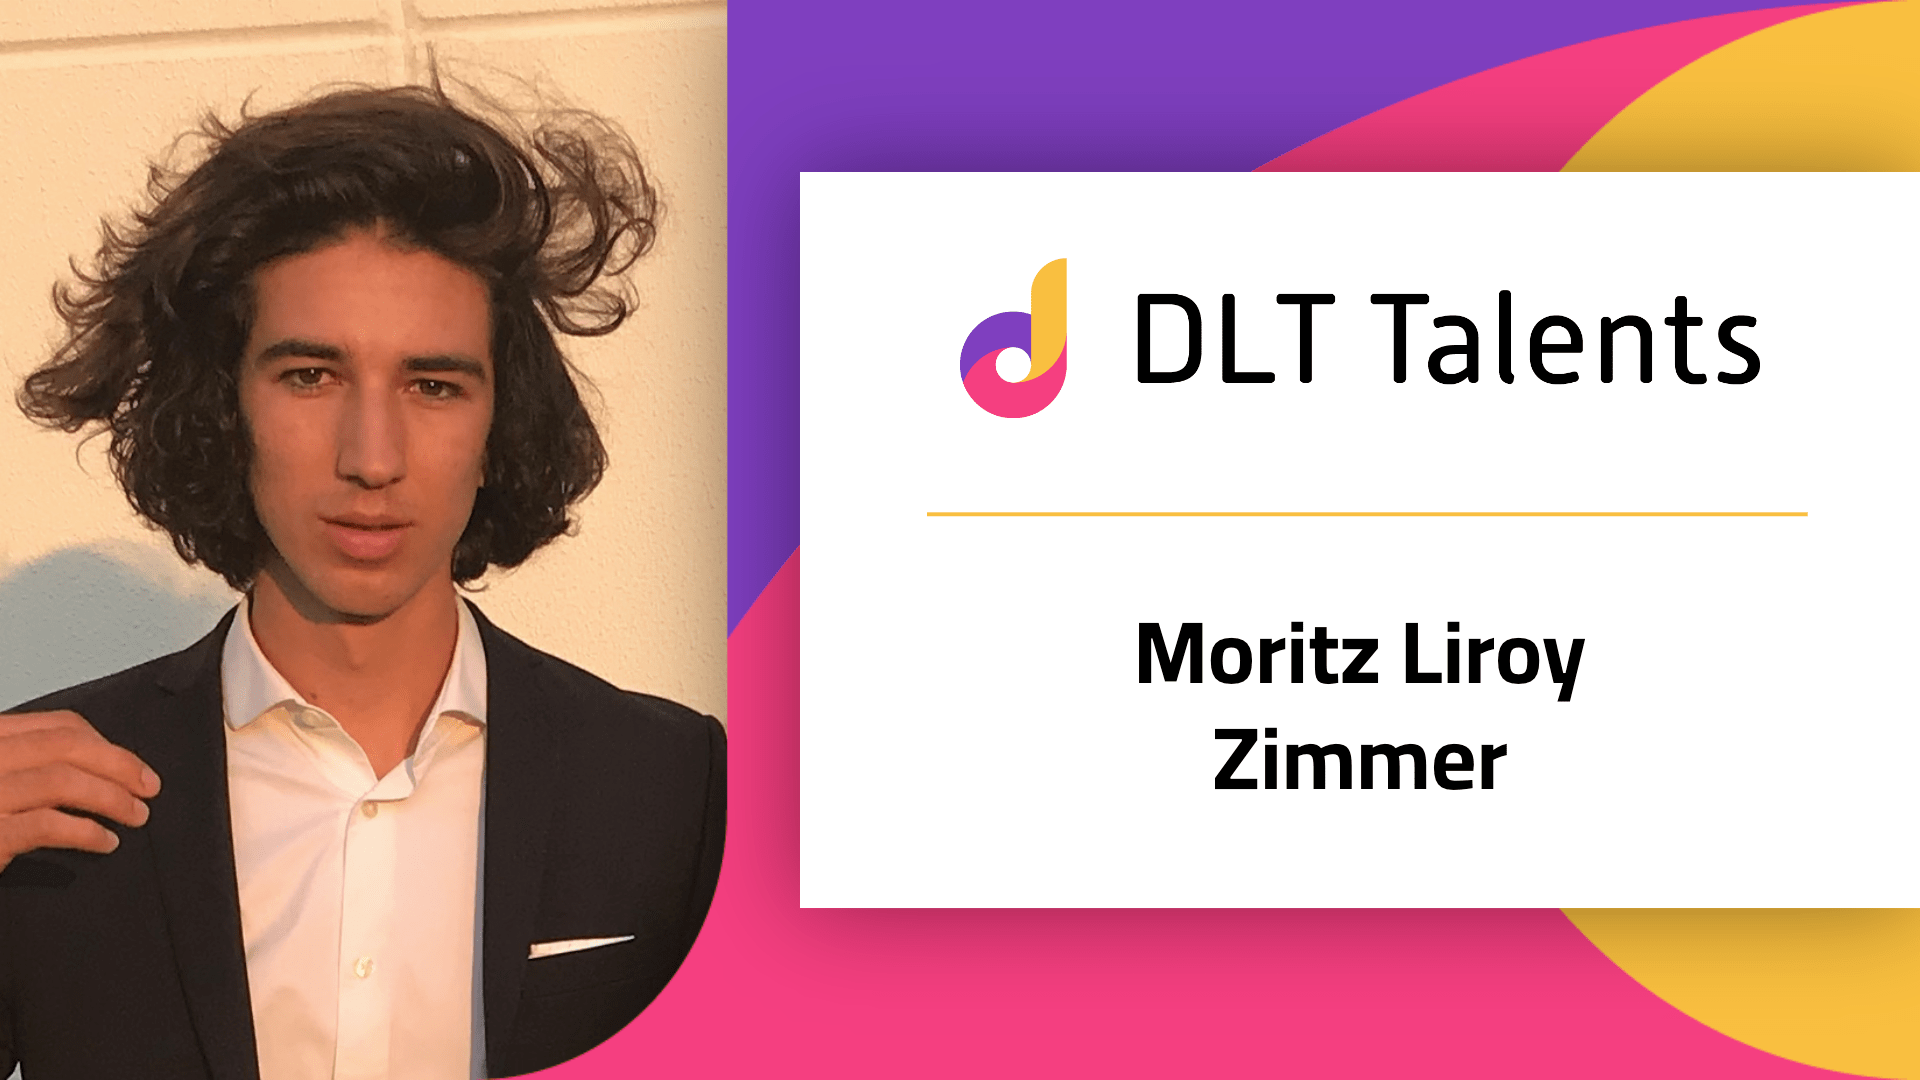 DLT Talents Mentor – Moritz Liroy Zimmer